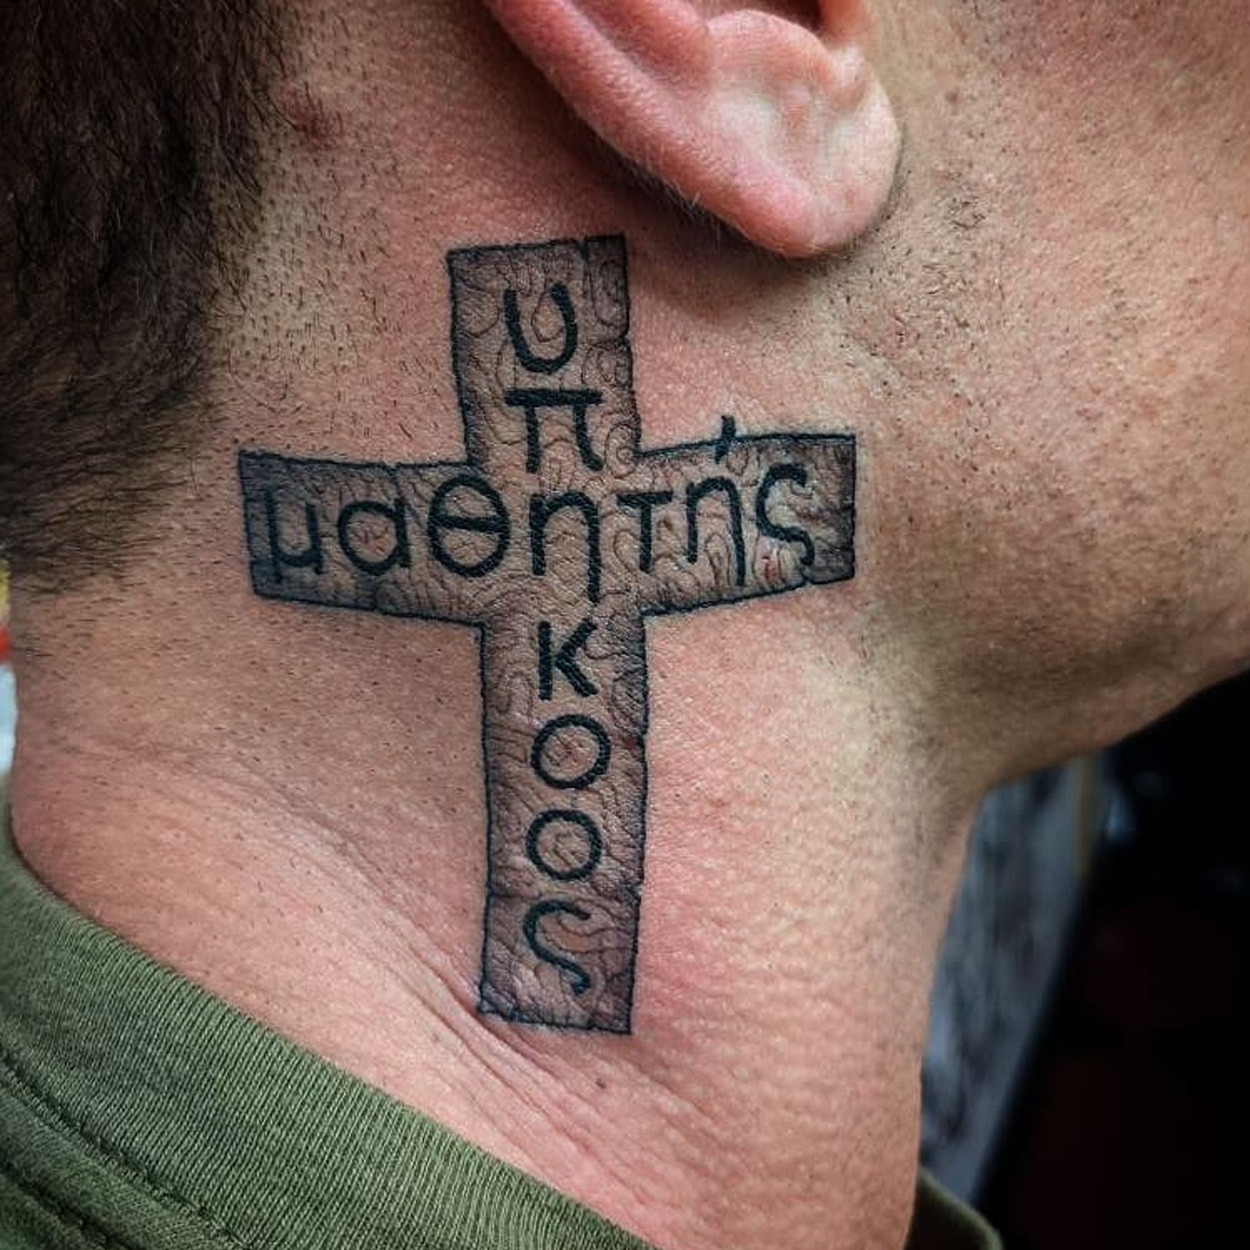 tatuagem no pescoço masculina de cruz